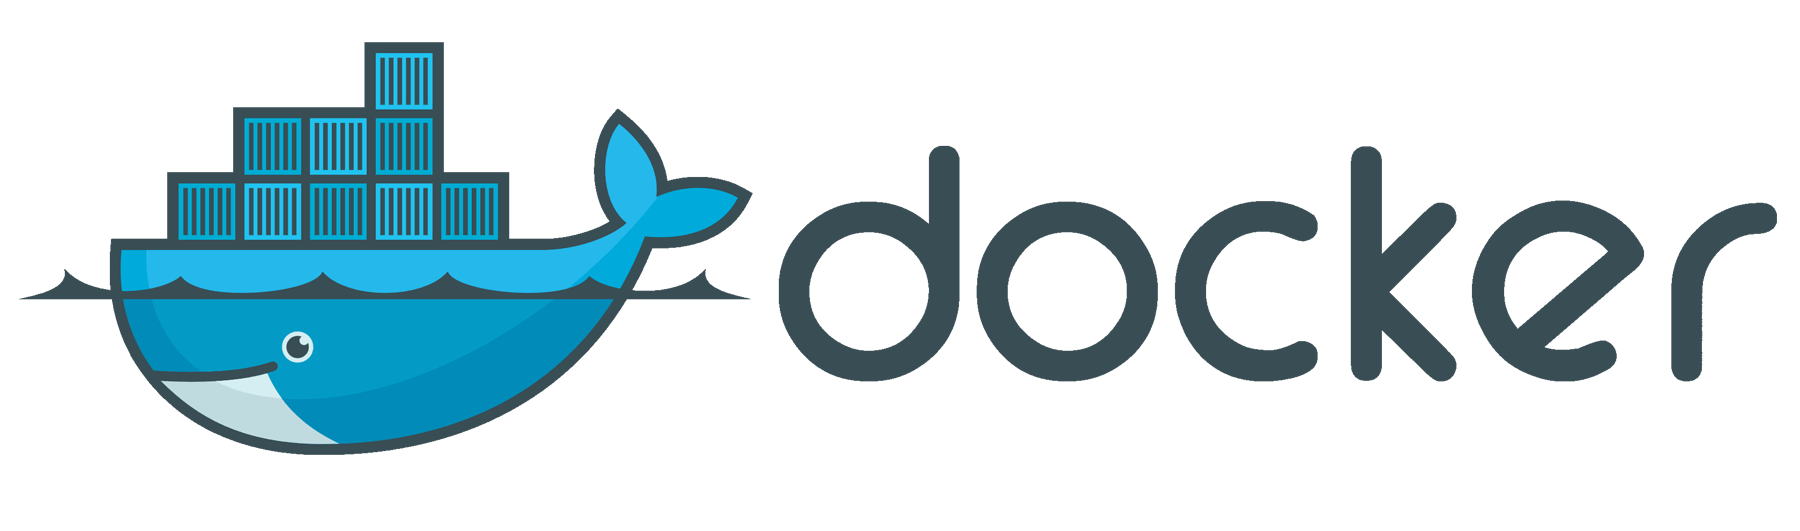 Docker Logo - Docker Logo, Docker Symbol, Meaning, History and Evolution